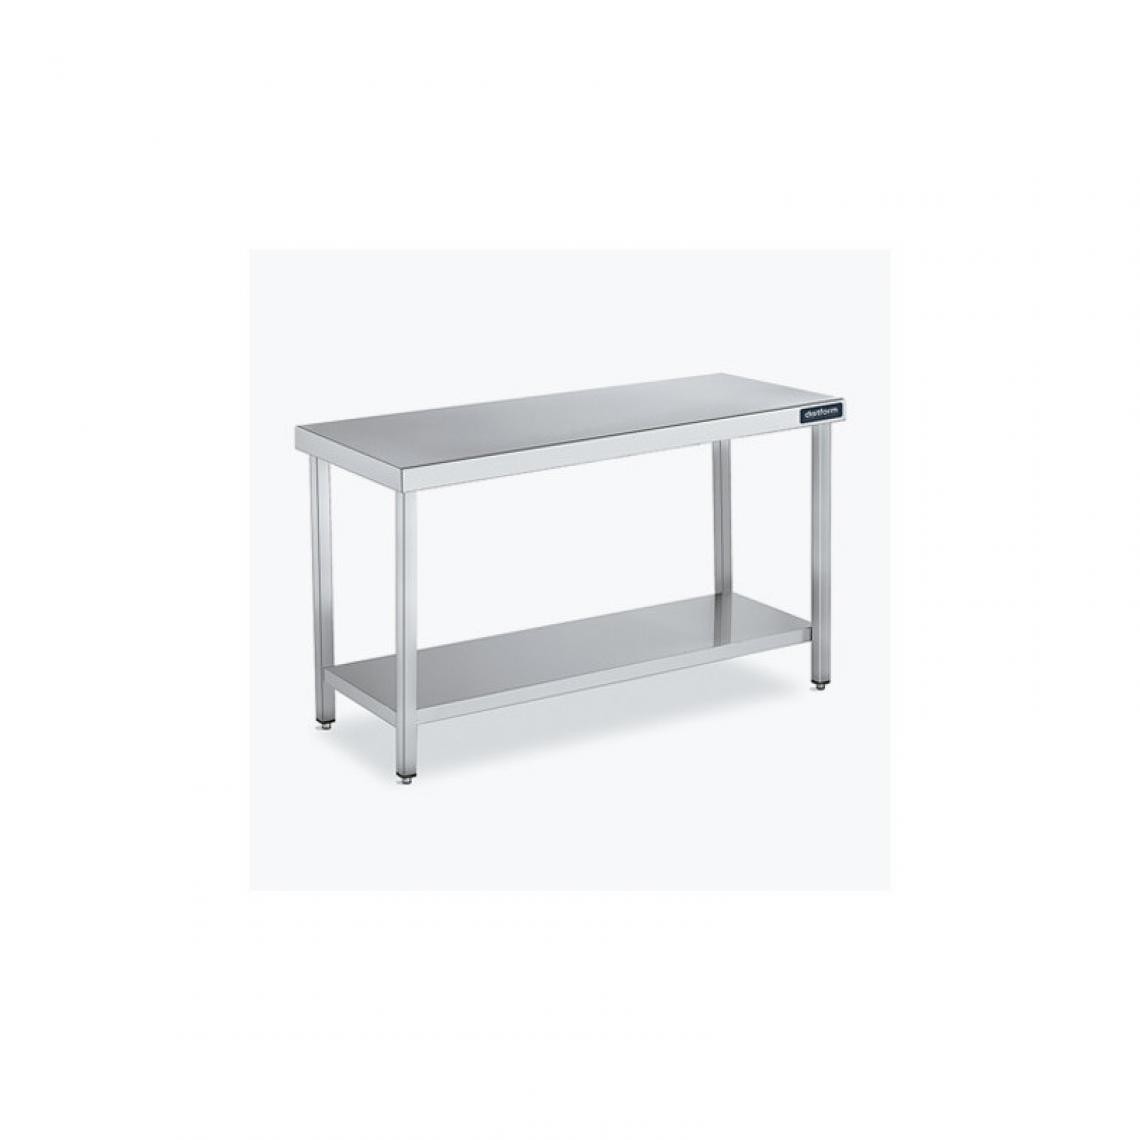 DISTFORM - Table Centrale 600x700 avec Étagère - Distform - Inox 18/102600x700x850mm - Tables à manger